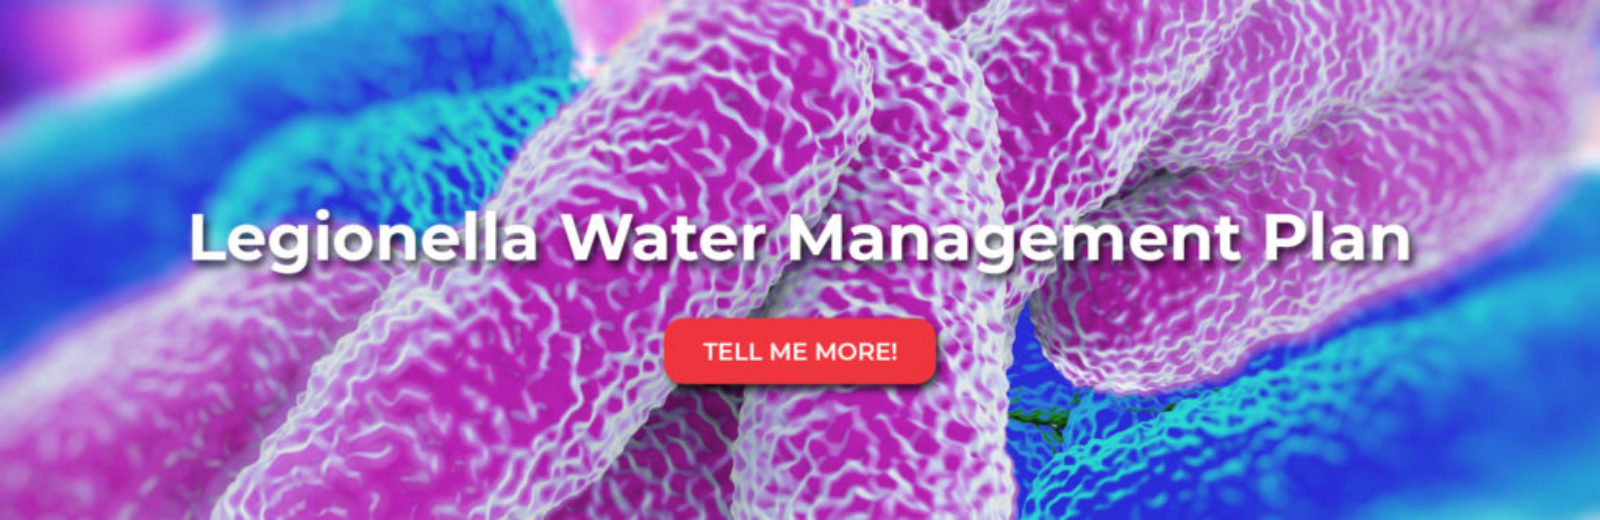 Legionella water management plan banner image